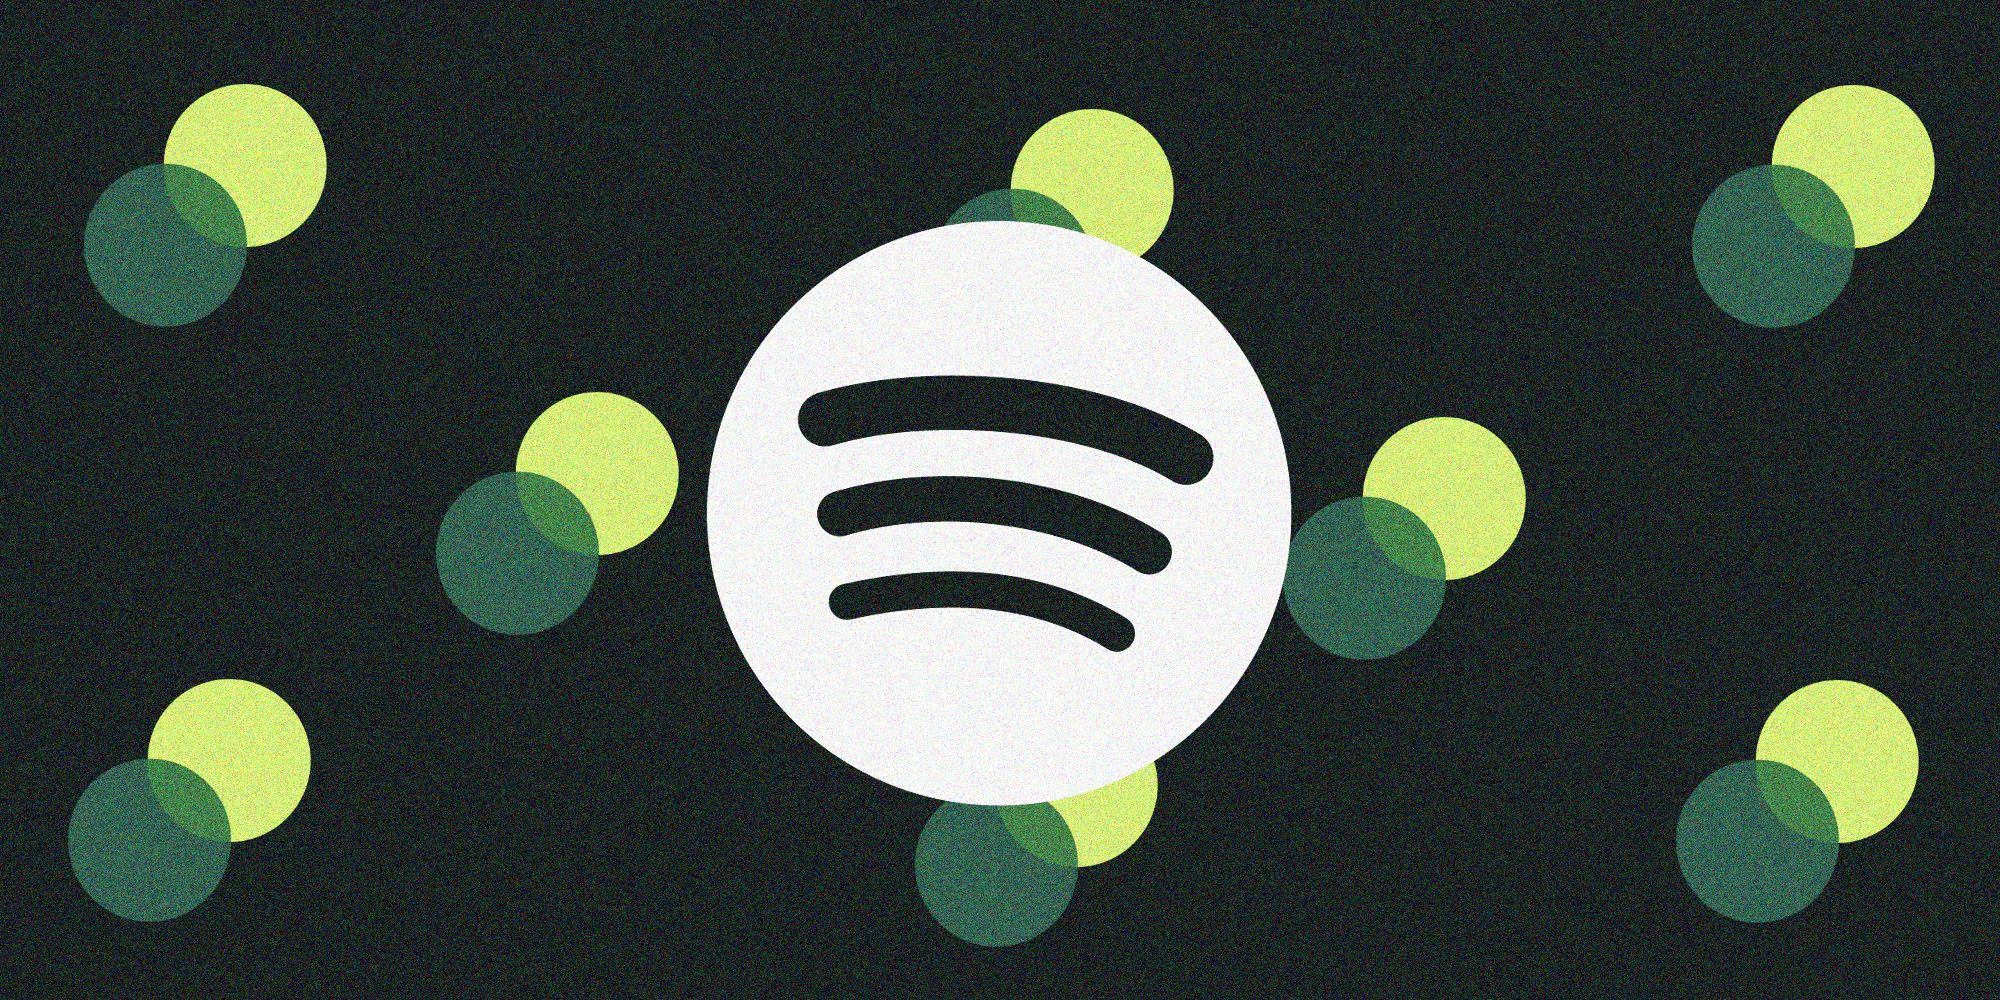 Logo Spotify en blanc sur un fond granuleux vert foncé, avec des cercles imbriqués verts et vert pâle derrière lui